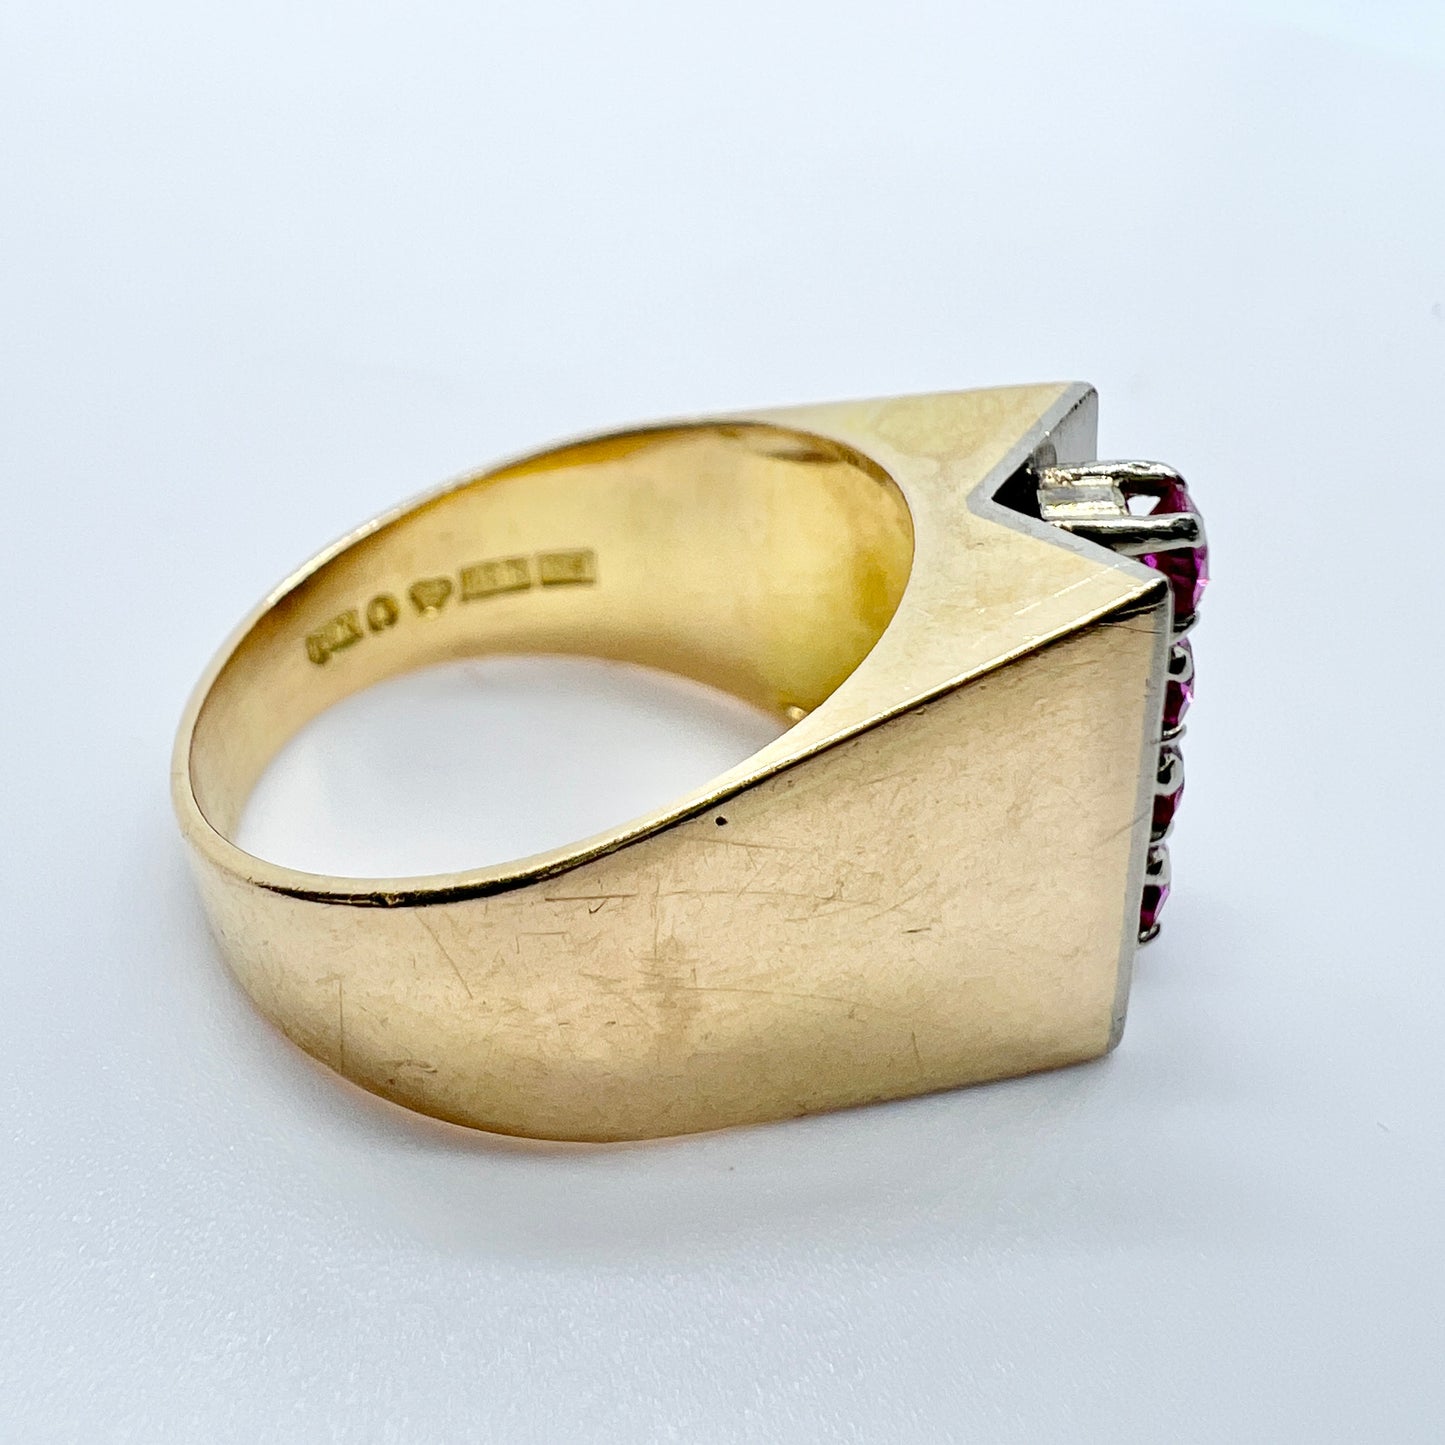 Kaplan Stockholm, Sweden 1971. Vintage Modernist 18k Gold Sapphire Ring. 9.7gram